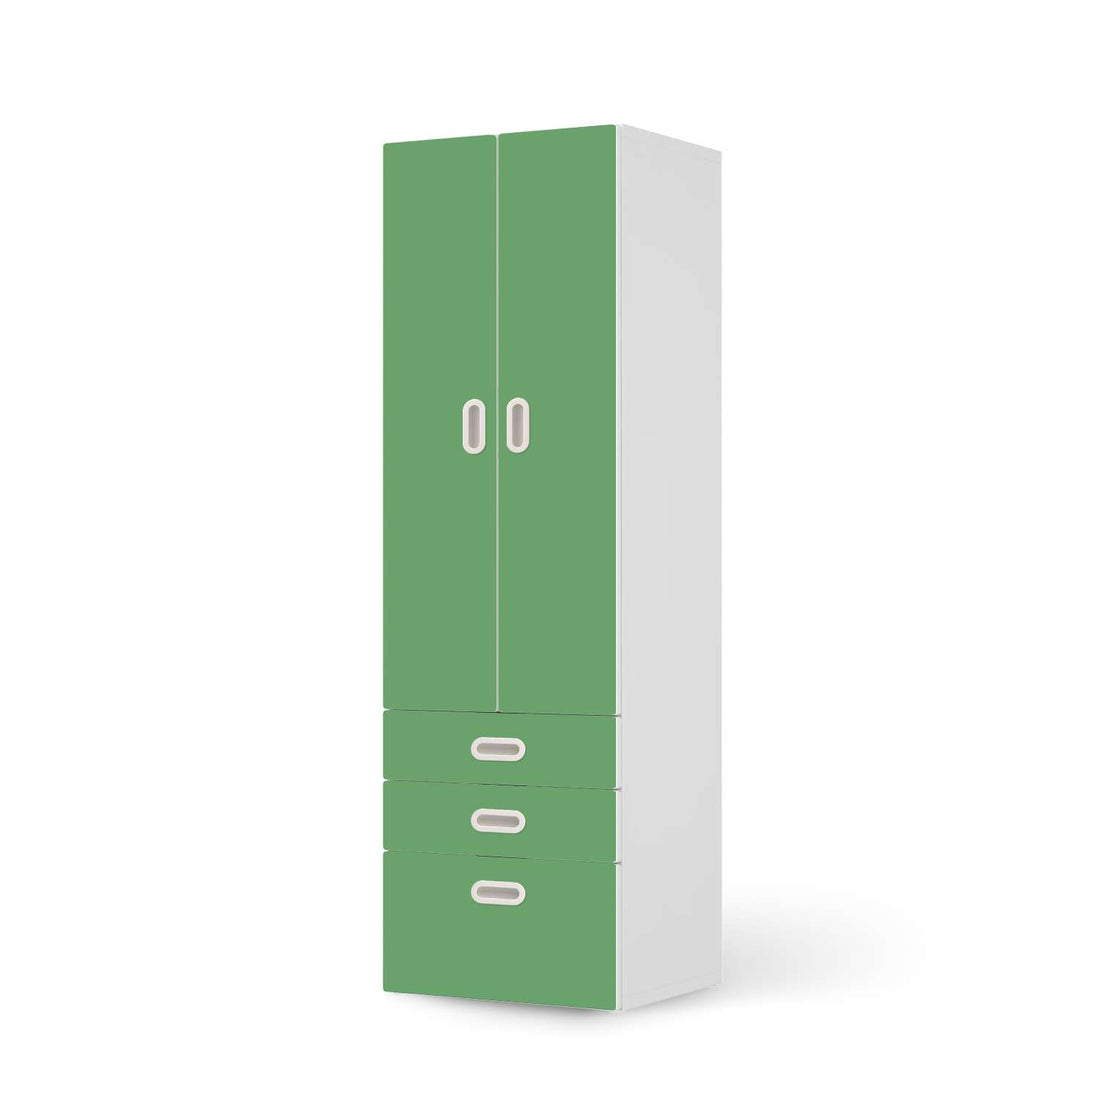 Klebefolie Grün Light - IKEA Stuva / Fritids kombiniert - 3 Schubladen und 2 große Türen  - weiss